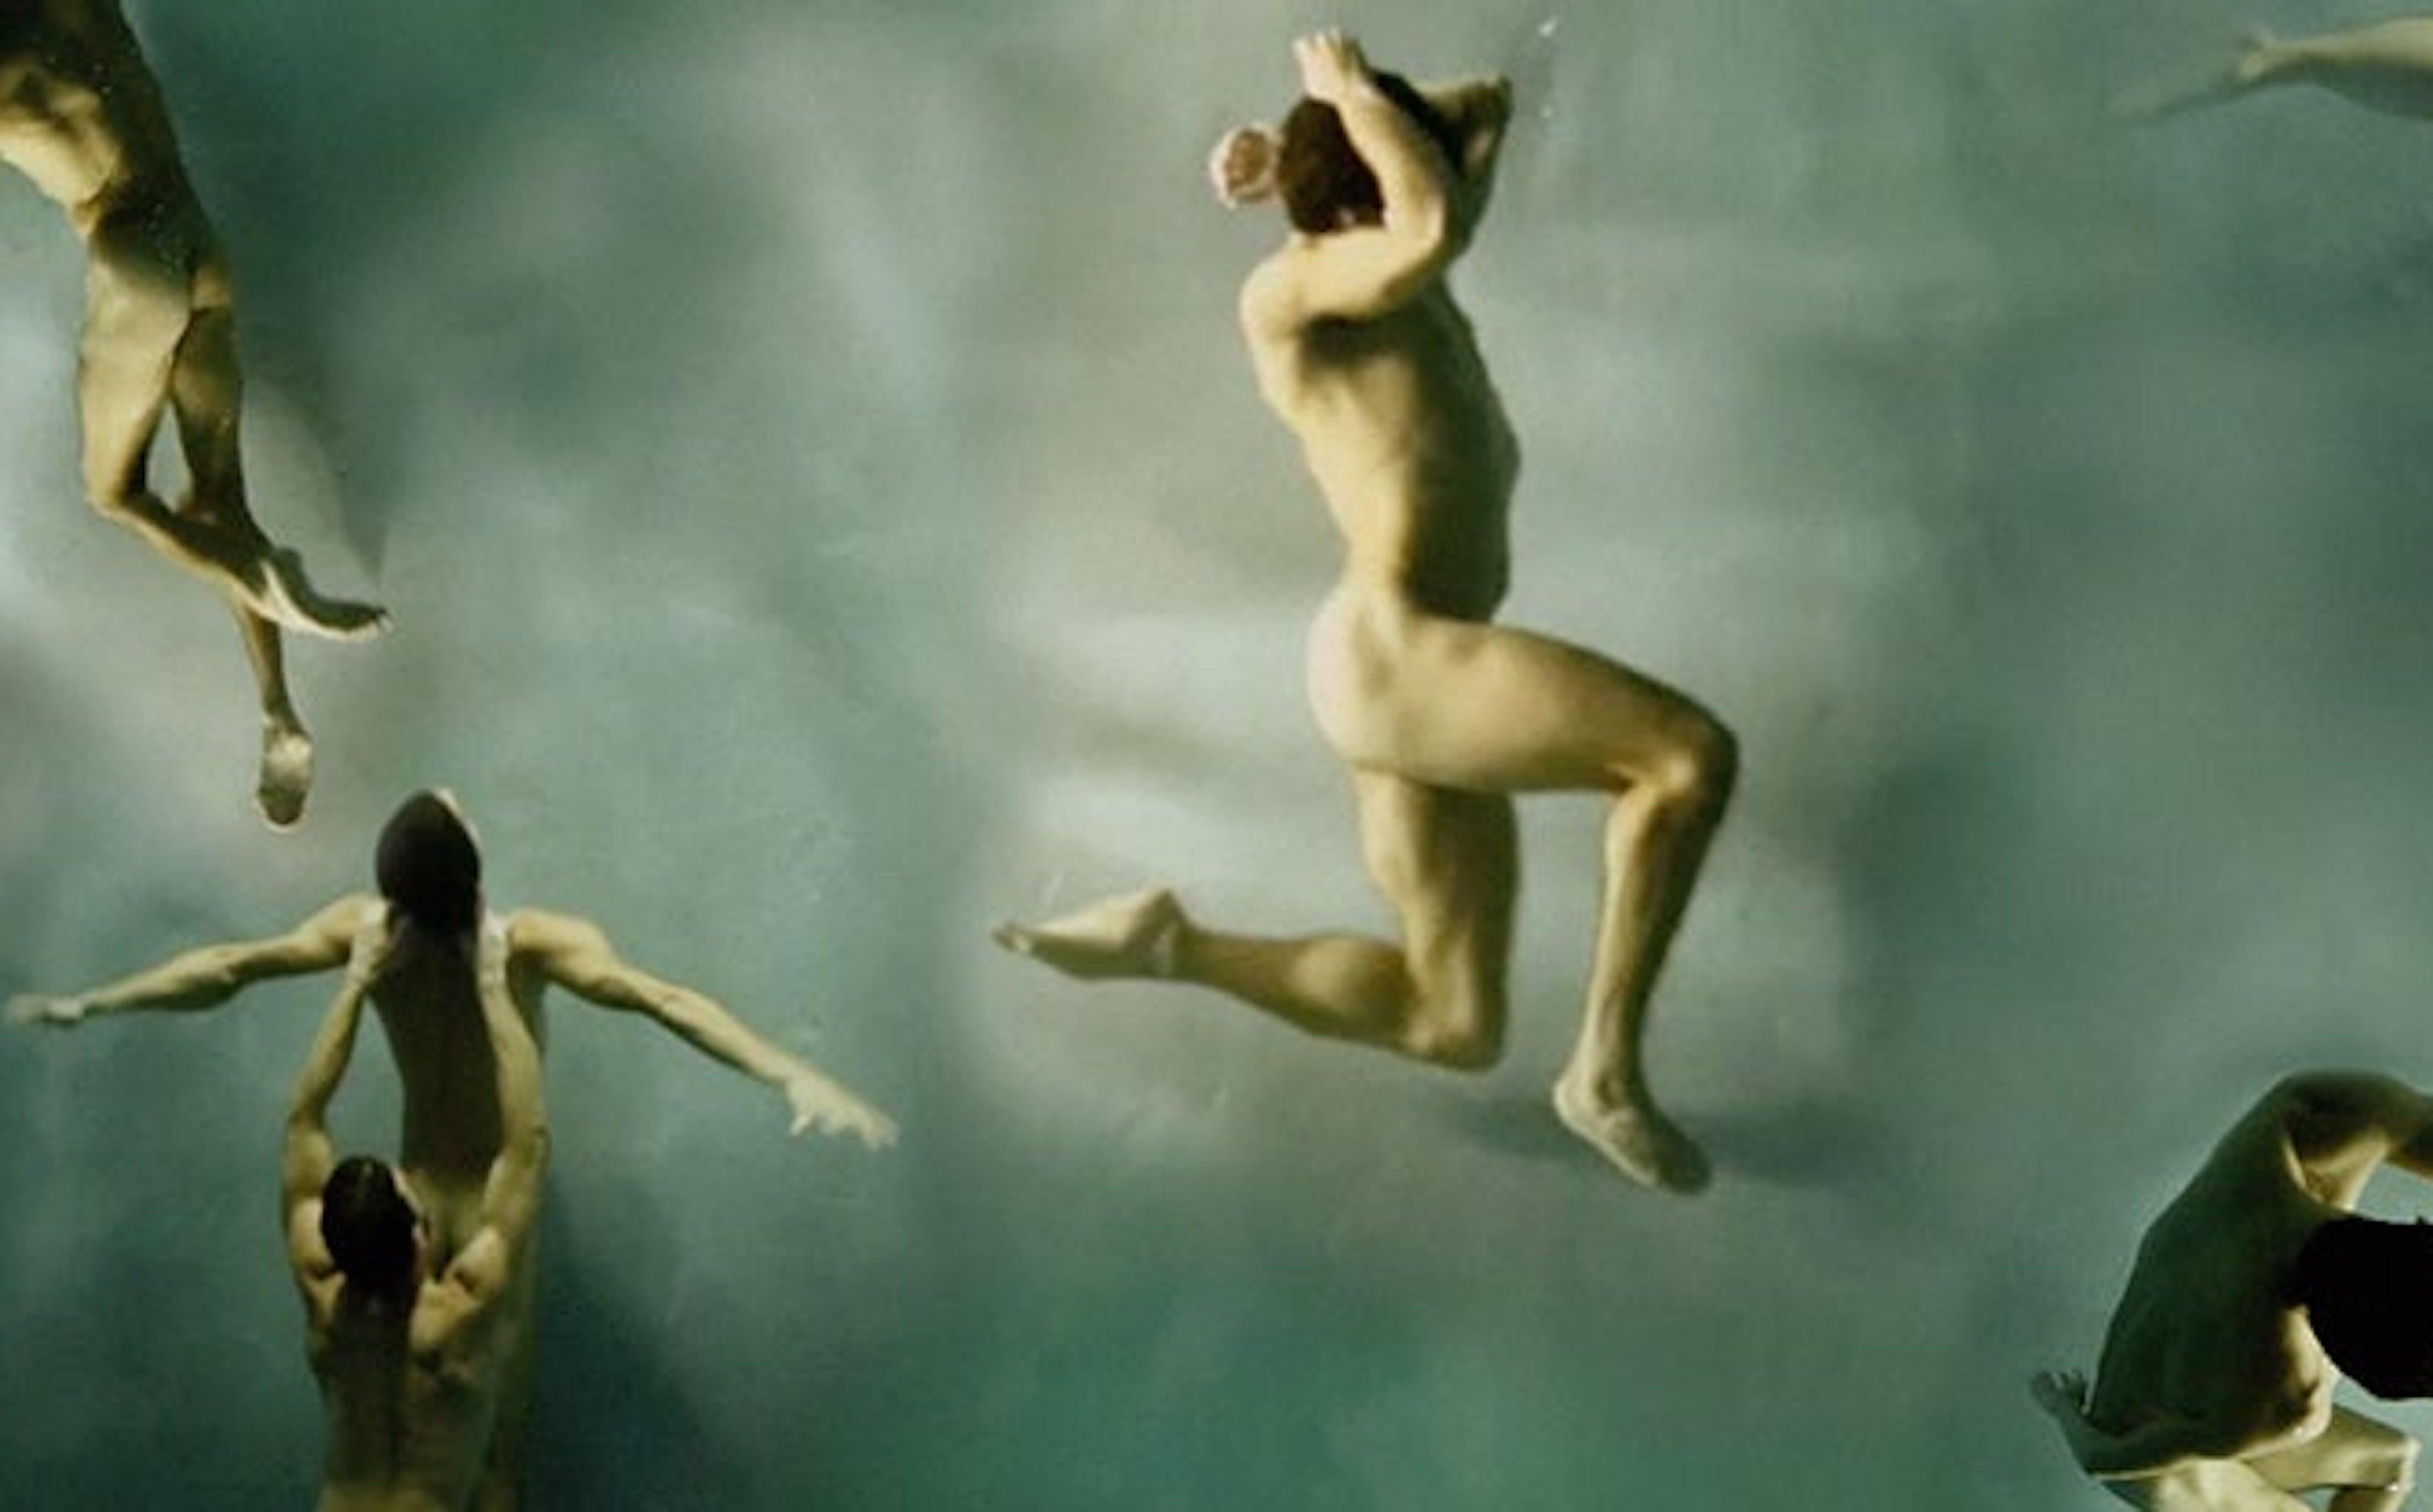 Die Ausrichtung. Nacktschwimmer. Farbfotografie in limitierter Auflage – Photograph von Ricky Cohete